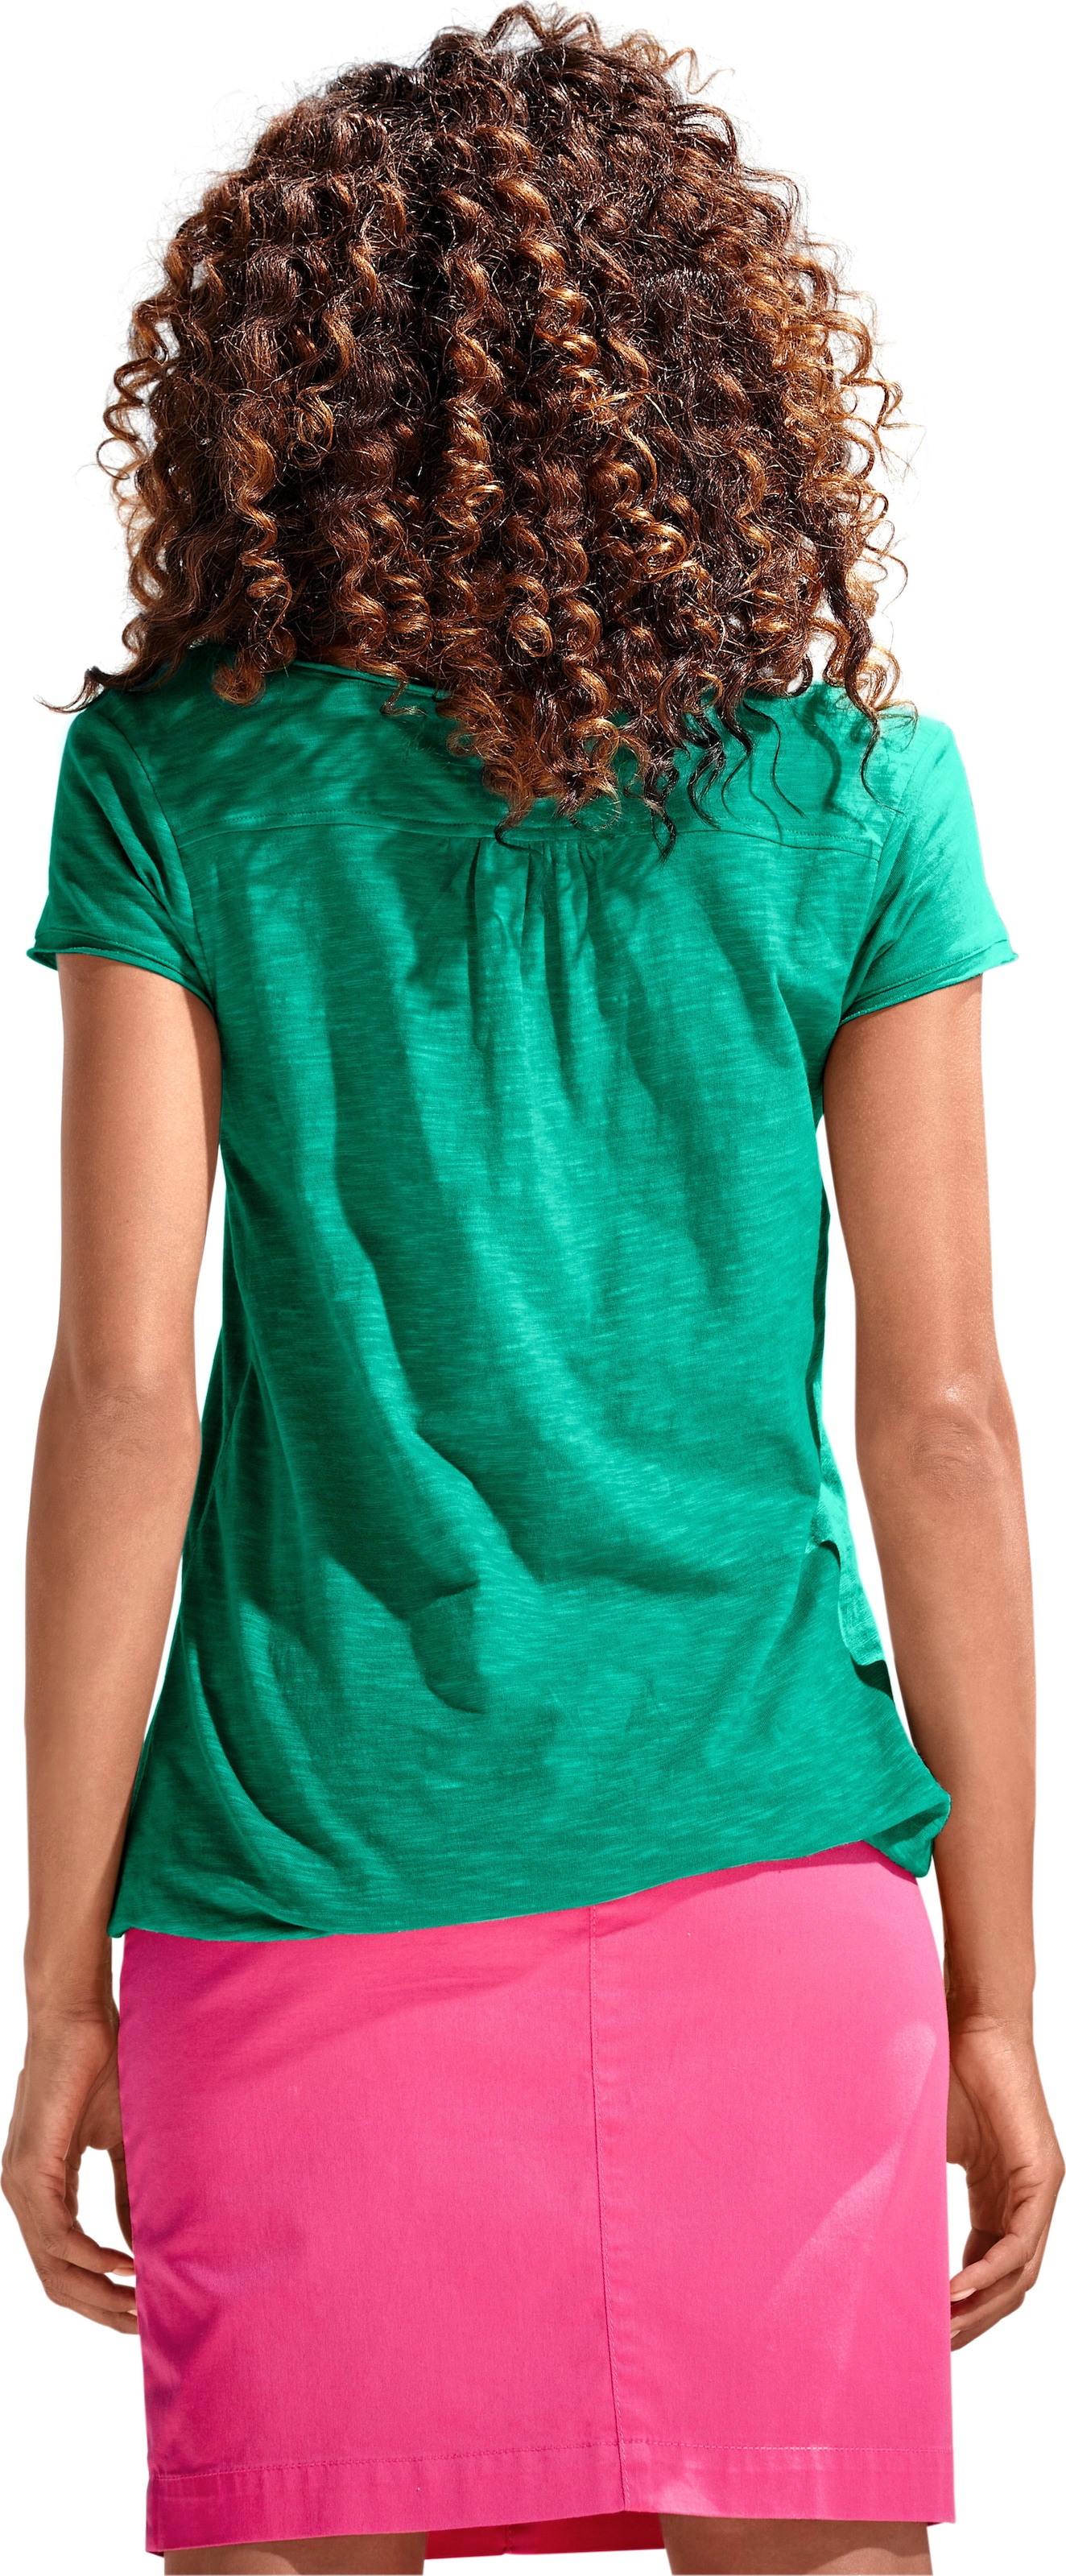 der Spitze günstig Kaufen-Rundhals-Shirt in grün von heine. Rundhals-Shirt in grün von heine <![CDATA[Rundhals-Shirt Moderne Form mit Gummizugbund. Mit Spitzen-Details und schimmernden Knöpfen. Leichte Shirtware mit Flammé-Effekt.]]>. 